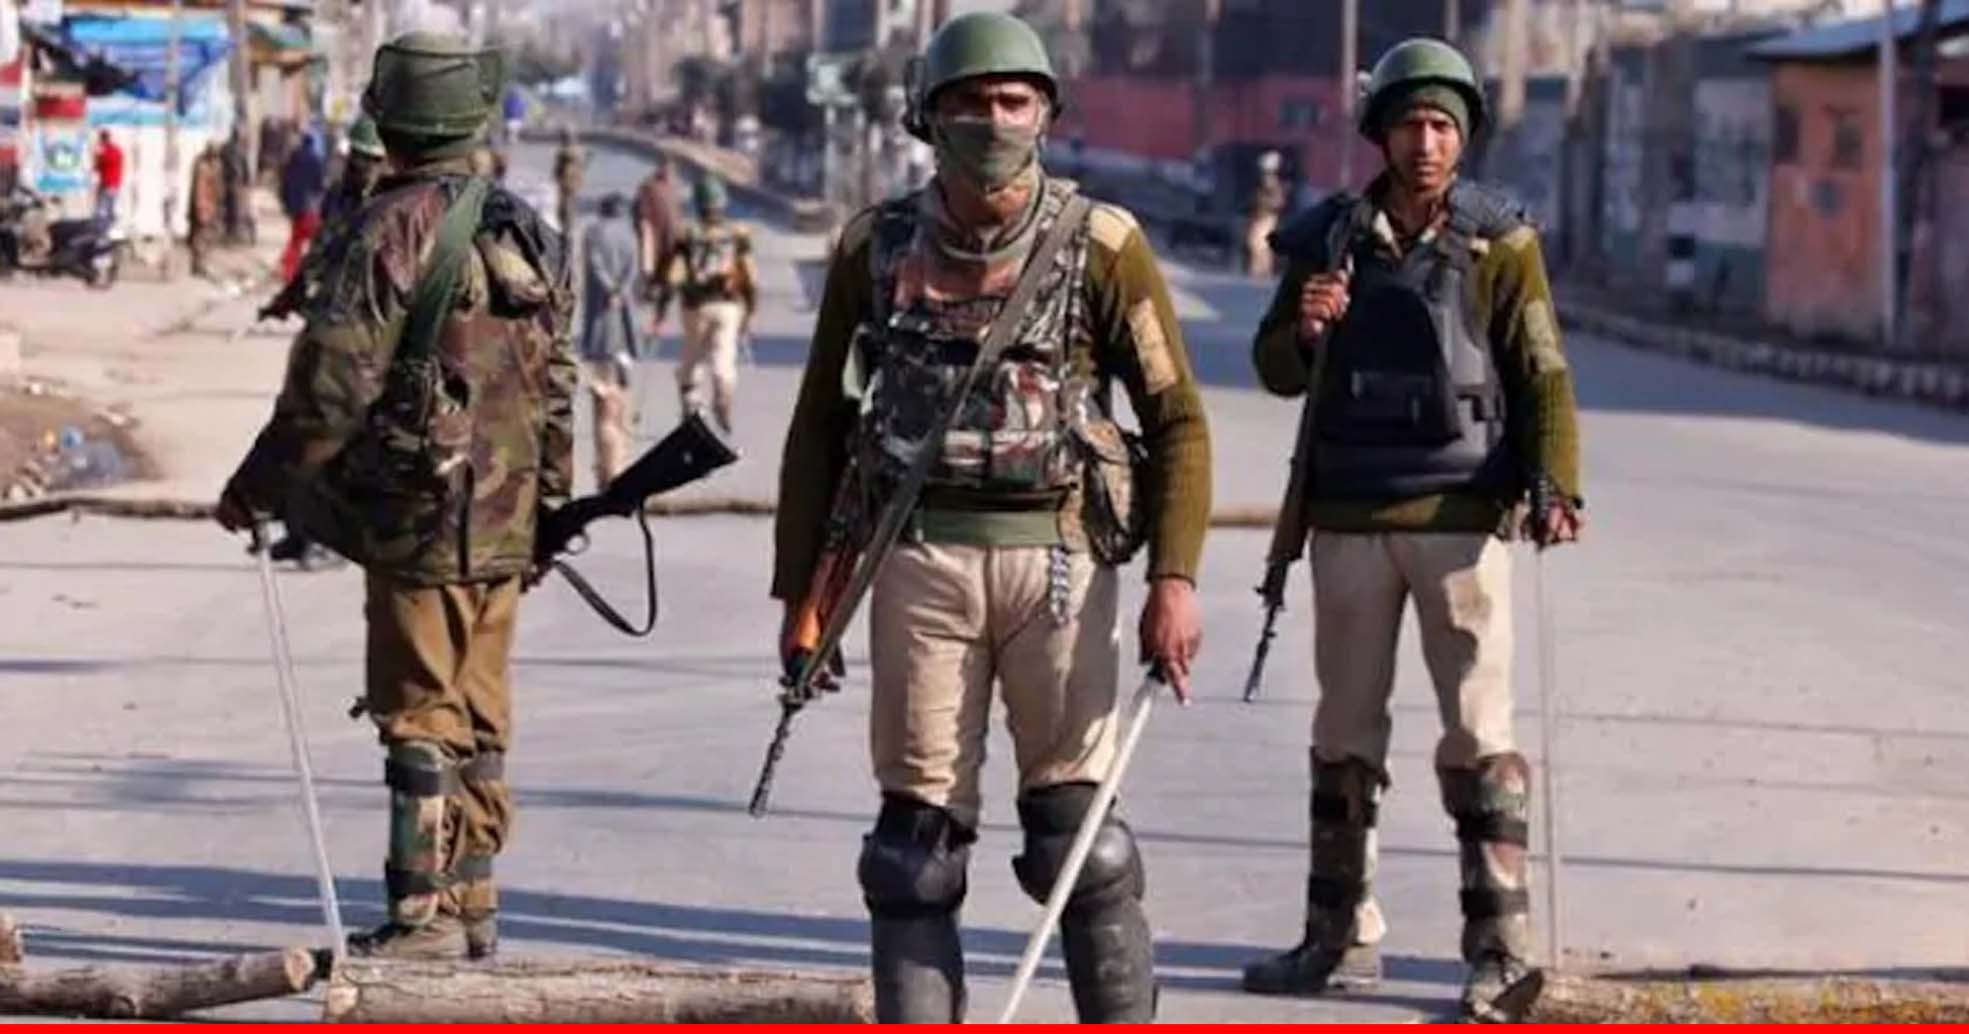 जम्मू-कश्मीर: श्रीनगर के खानमोह इलाके में सुरक्षाबलों ने दो आतंकियों को मार गिराया